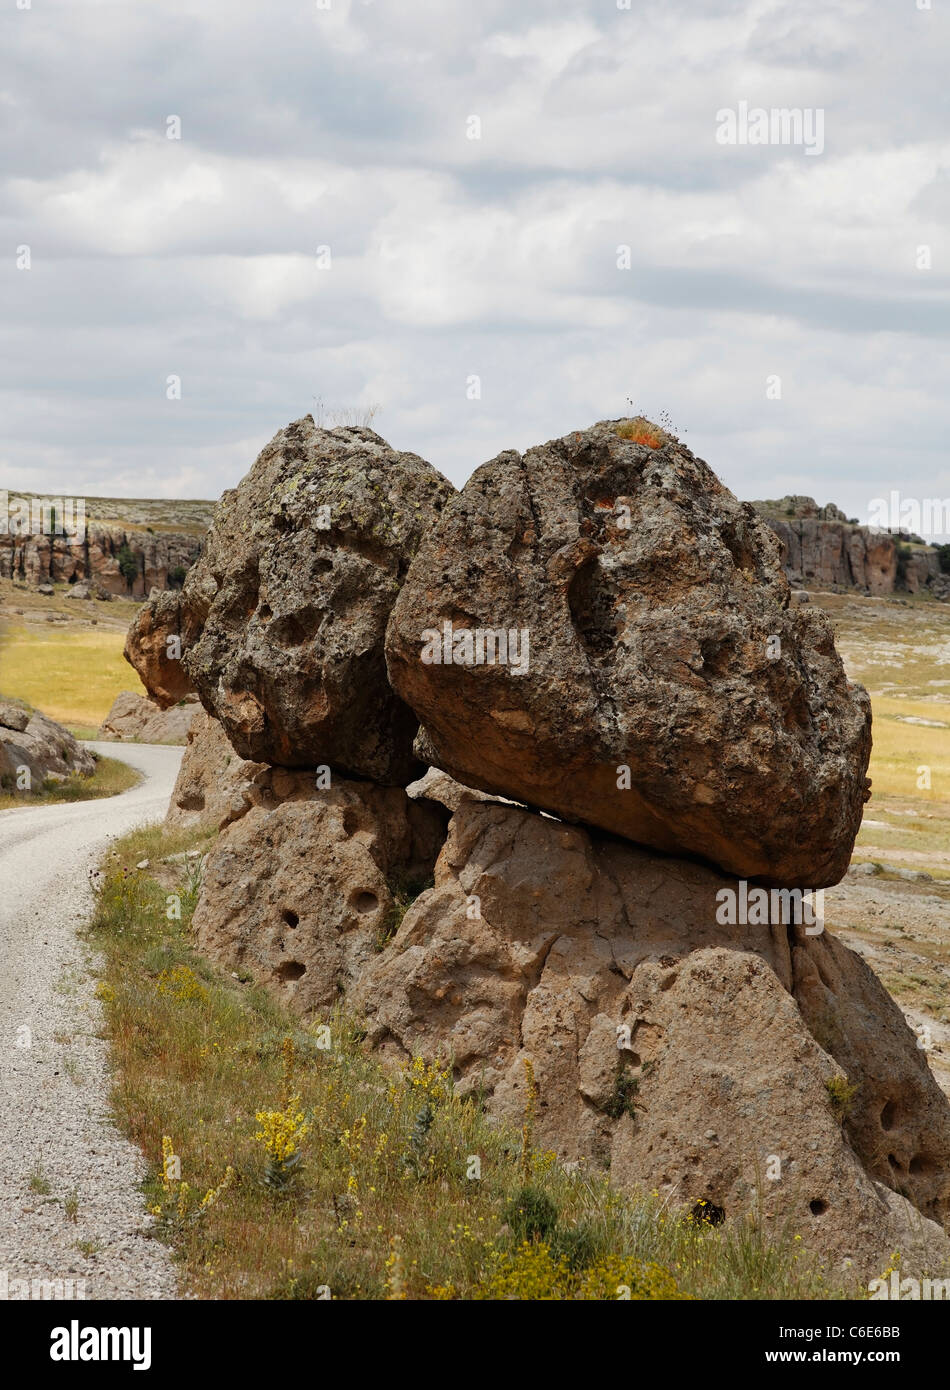 Vulkanische Asche Lavafelsen prekär auf einander ausgeglichen eine gefährliche Lawine Funktion auf Feldweg Cappadocia Türkei Stockfoto